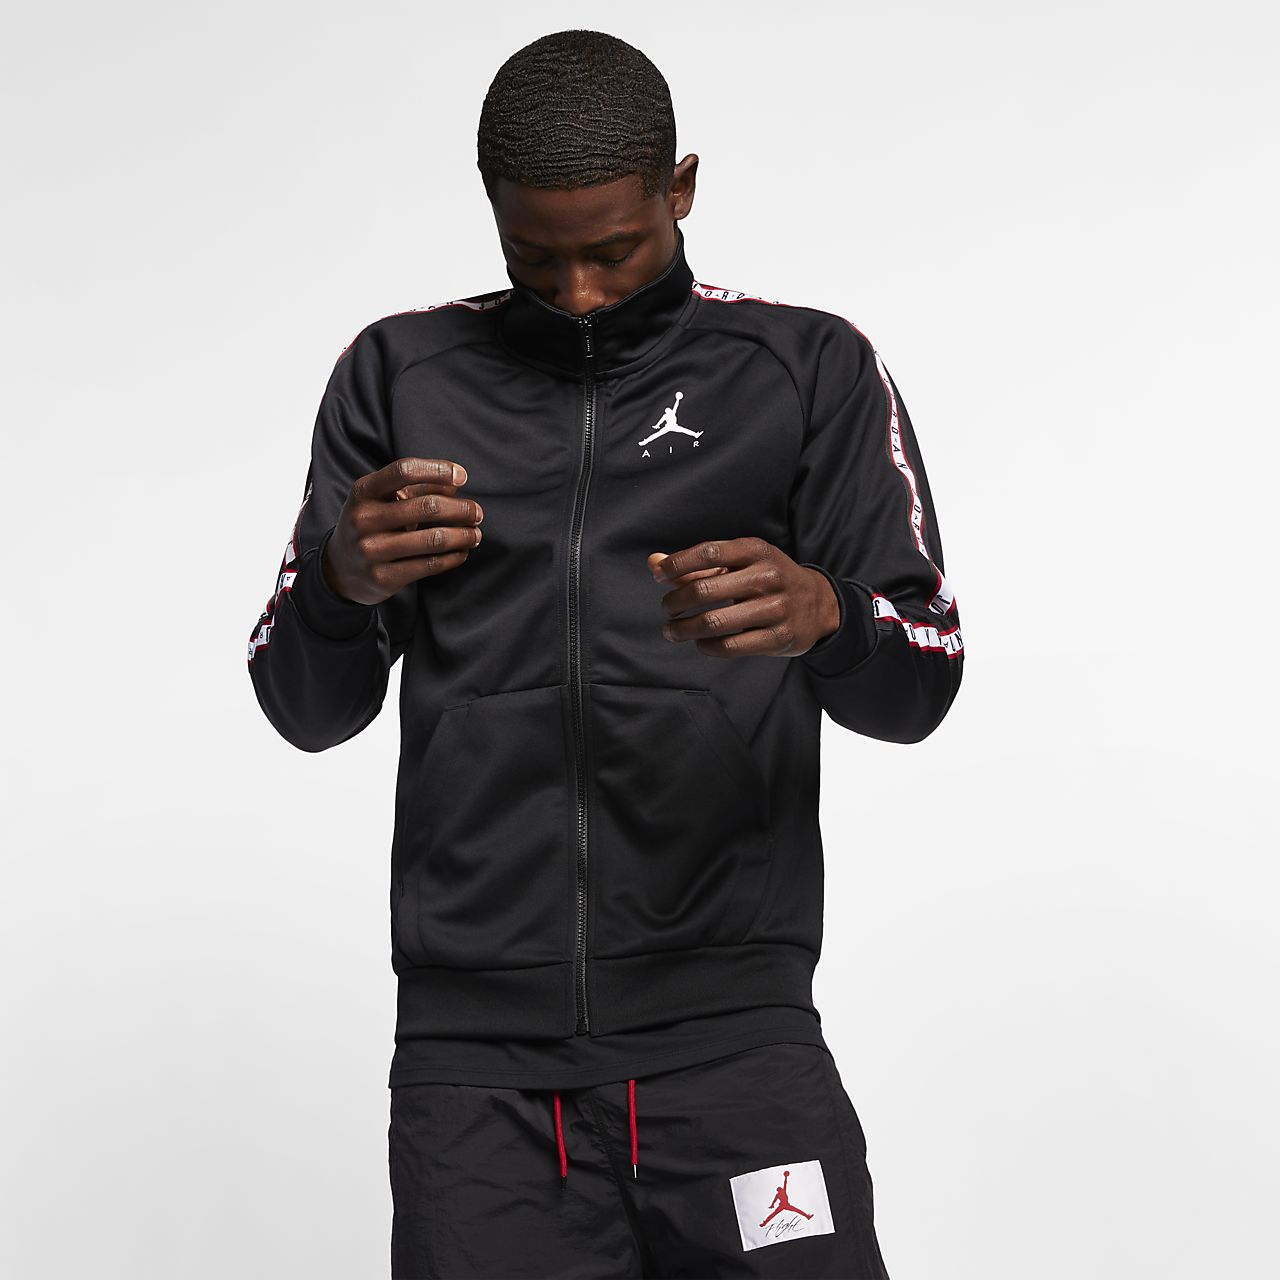 Nike Jordan Jumpman Jacket